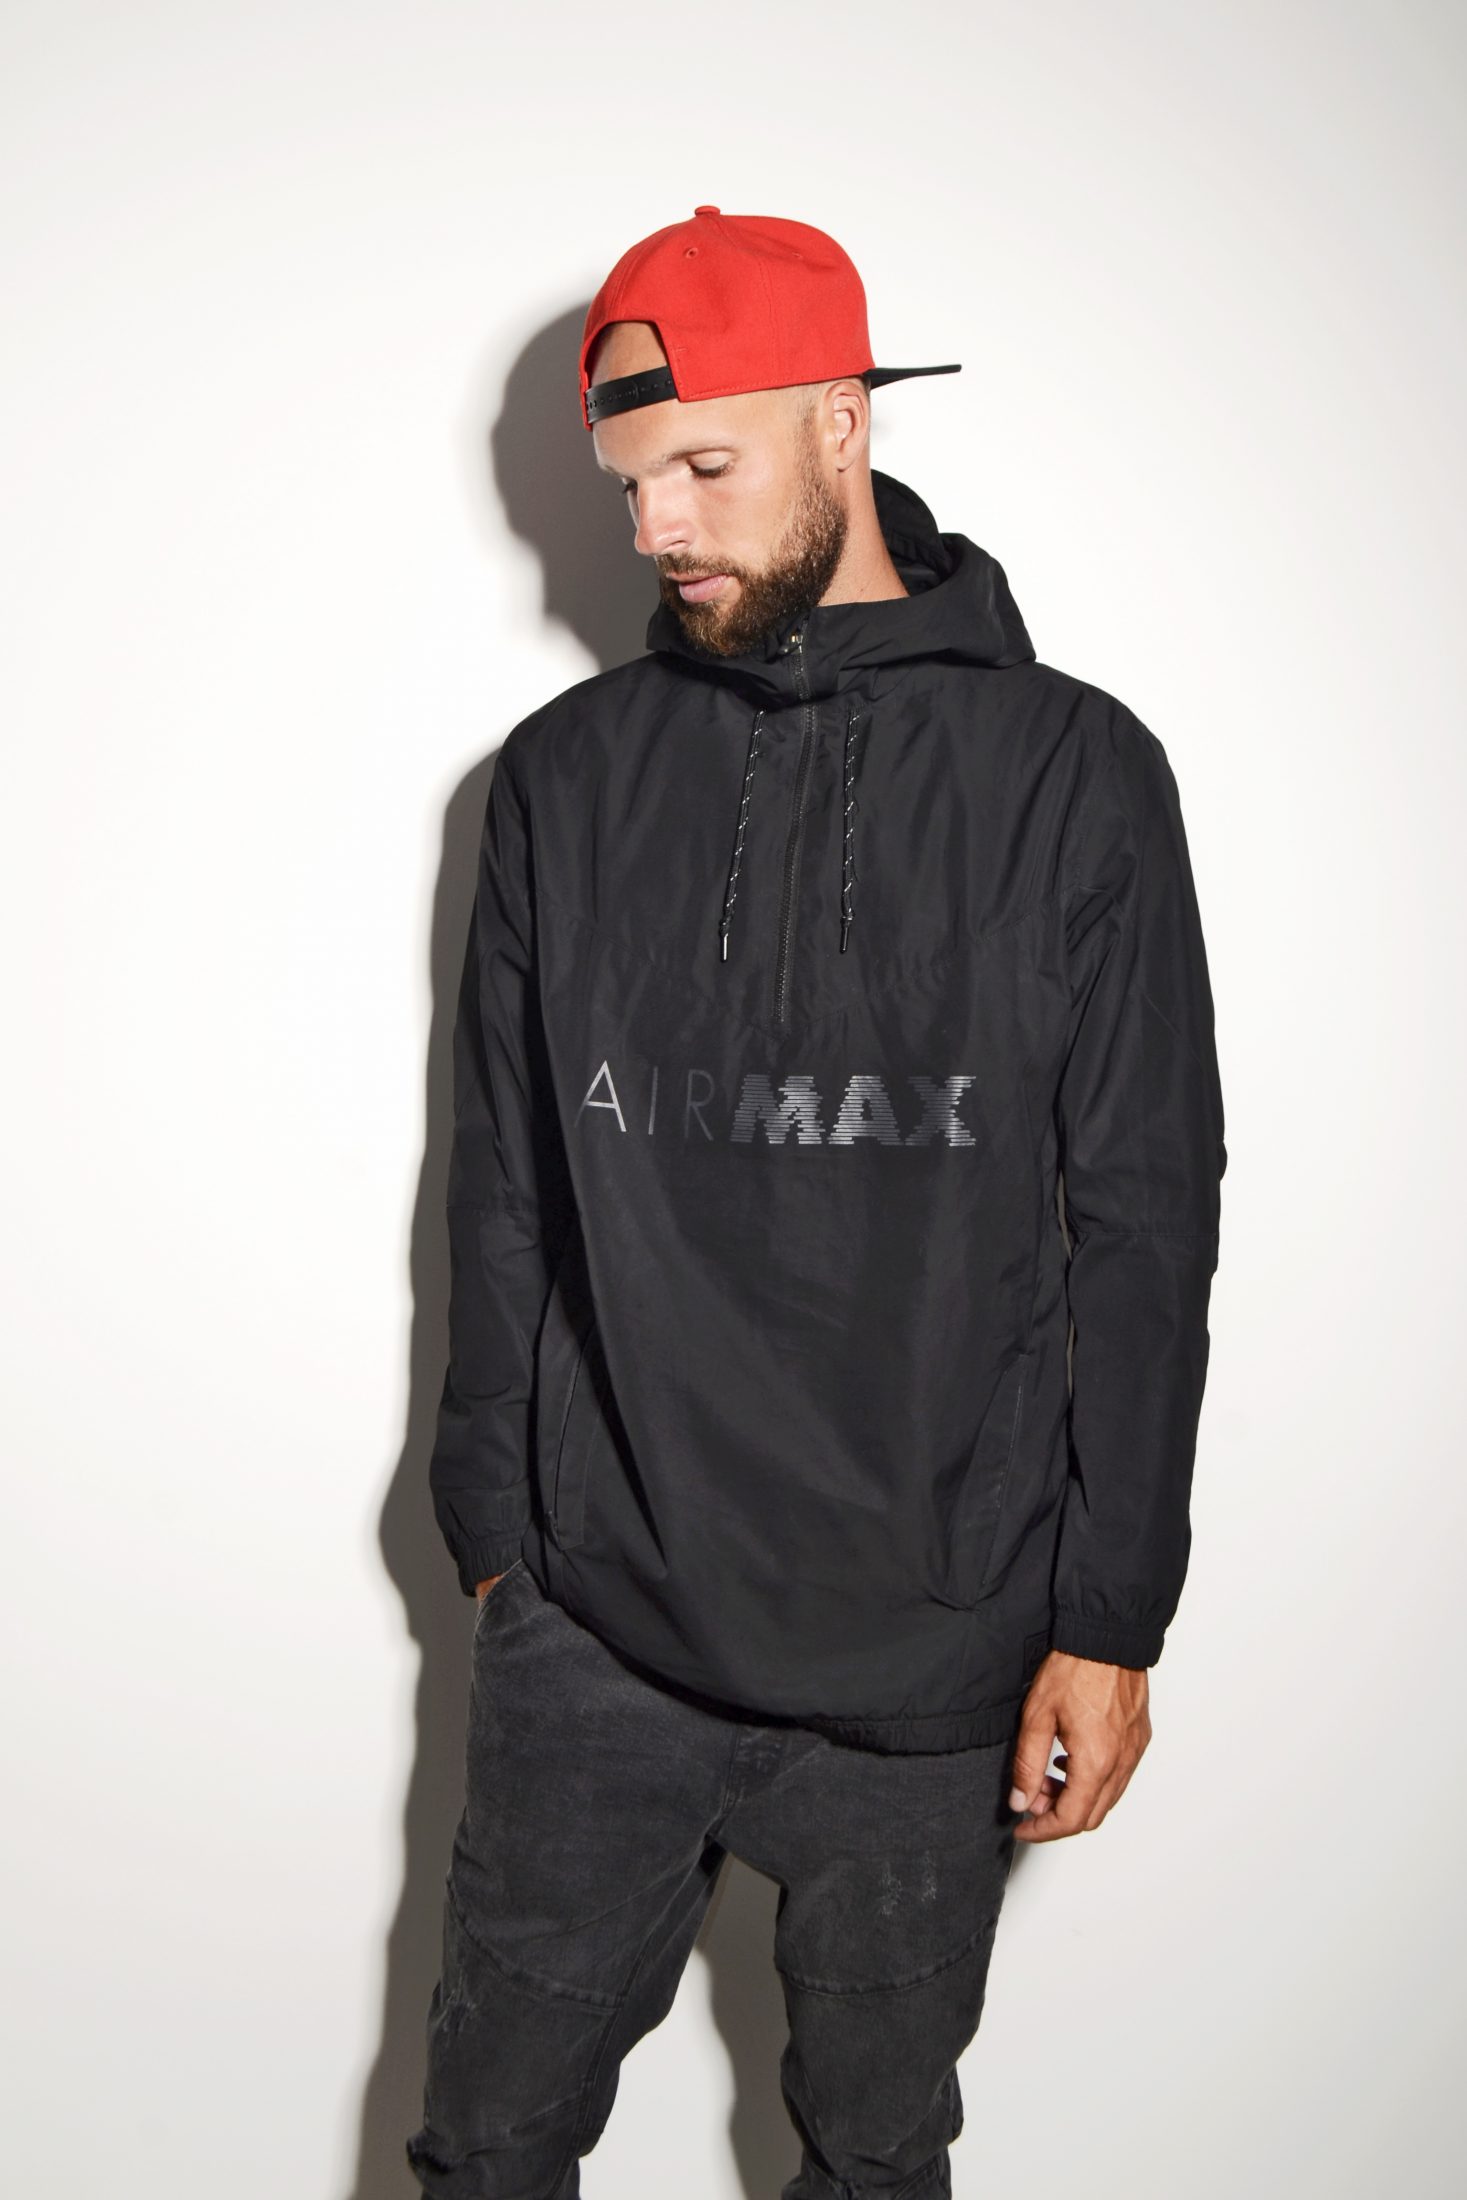 Ingenieria preámbulo social Nike Air Max black jacket | HOT MILK vintage clothing online store